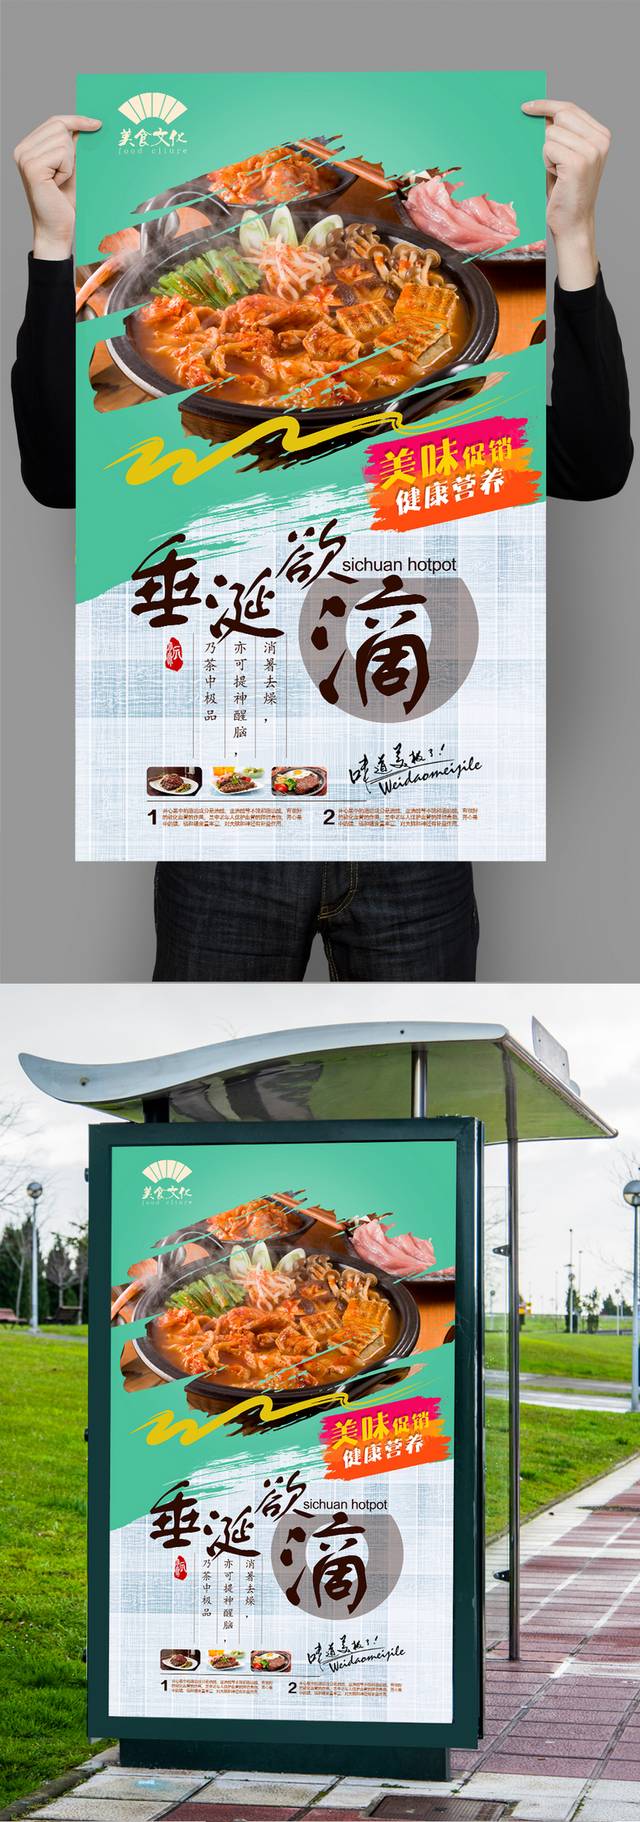 高档经典韩国泡菜锅宣传海报设计